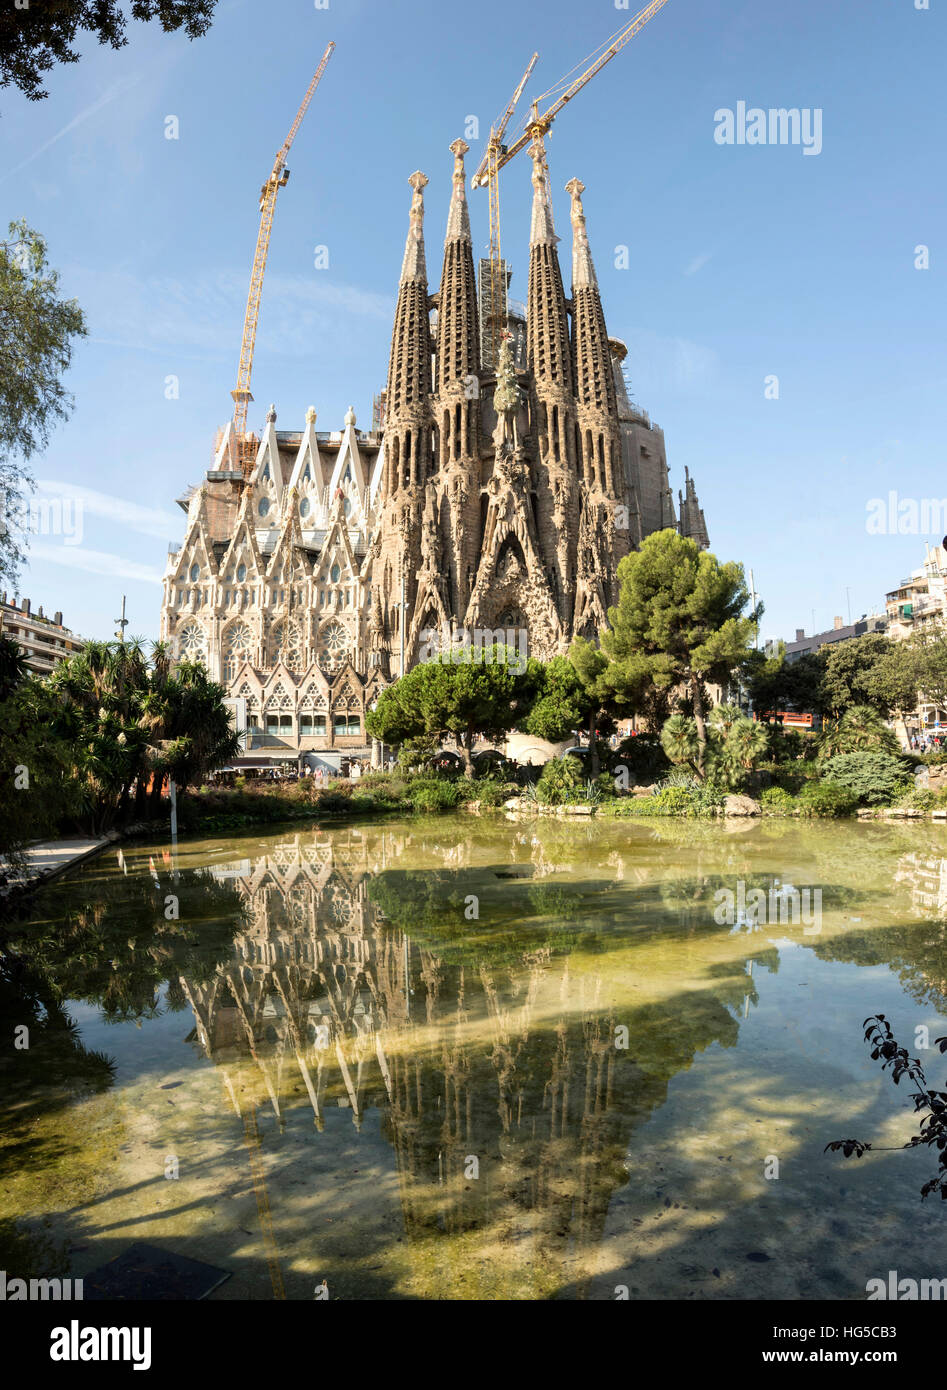 Gaudi's Cathedral of La Sagrada Familia, still under construction, UNESCO, Barcelona, Catalonia, Spain Stock Photo